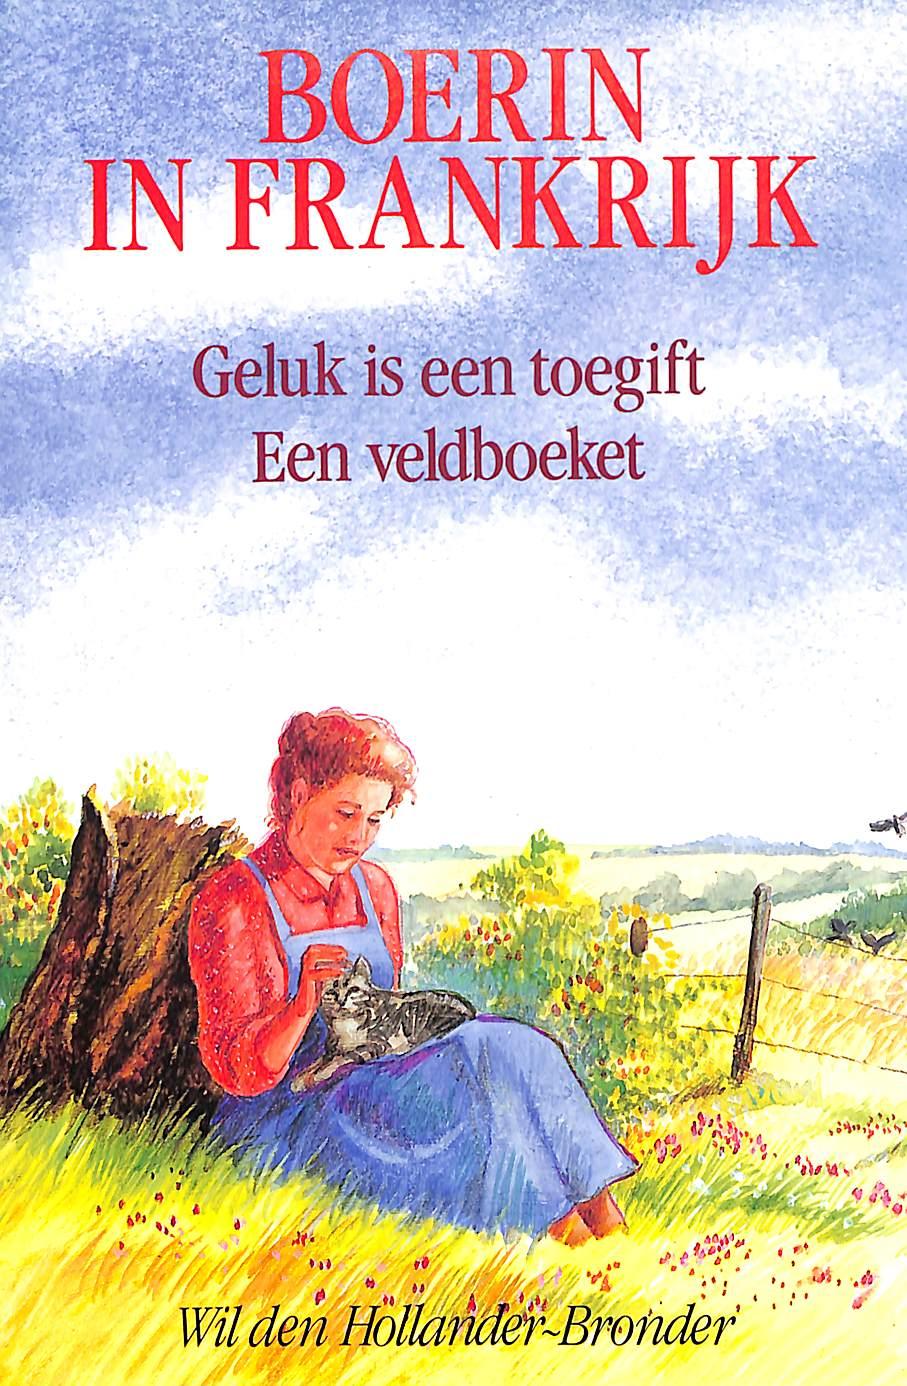 Boerin in Frankrijk, Hollander-Bronder Wil den | BoekenWebsite.nl